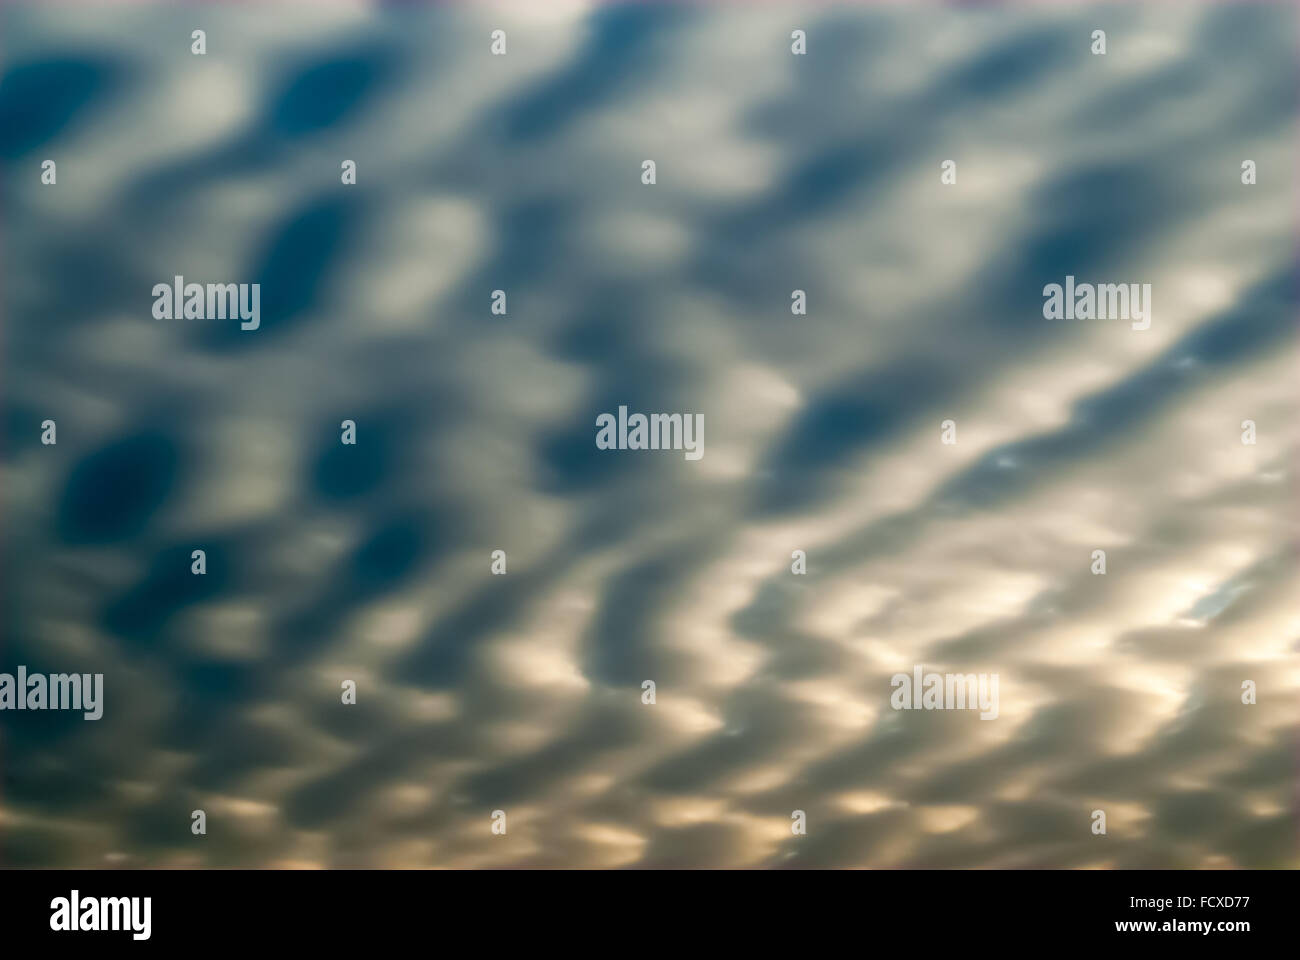 Abstract liscio grigio e blu cloudscape con frastagliate forme d'onda e ombre, parzialmente illuminata dal sole che tramonta dietro le nuvole. Foto Stock